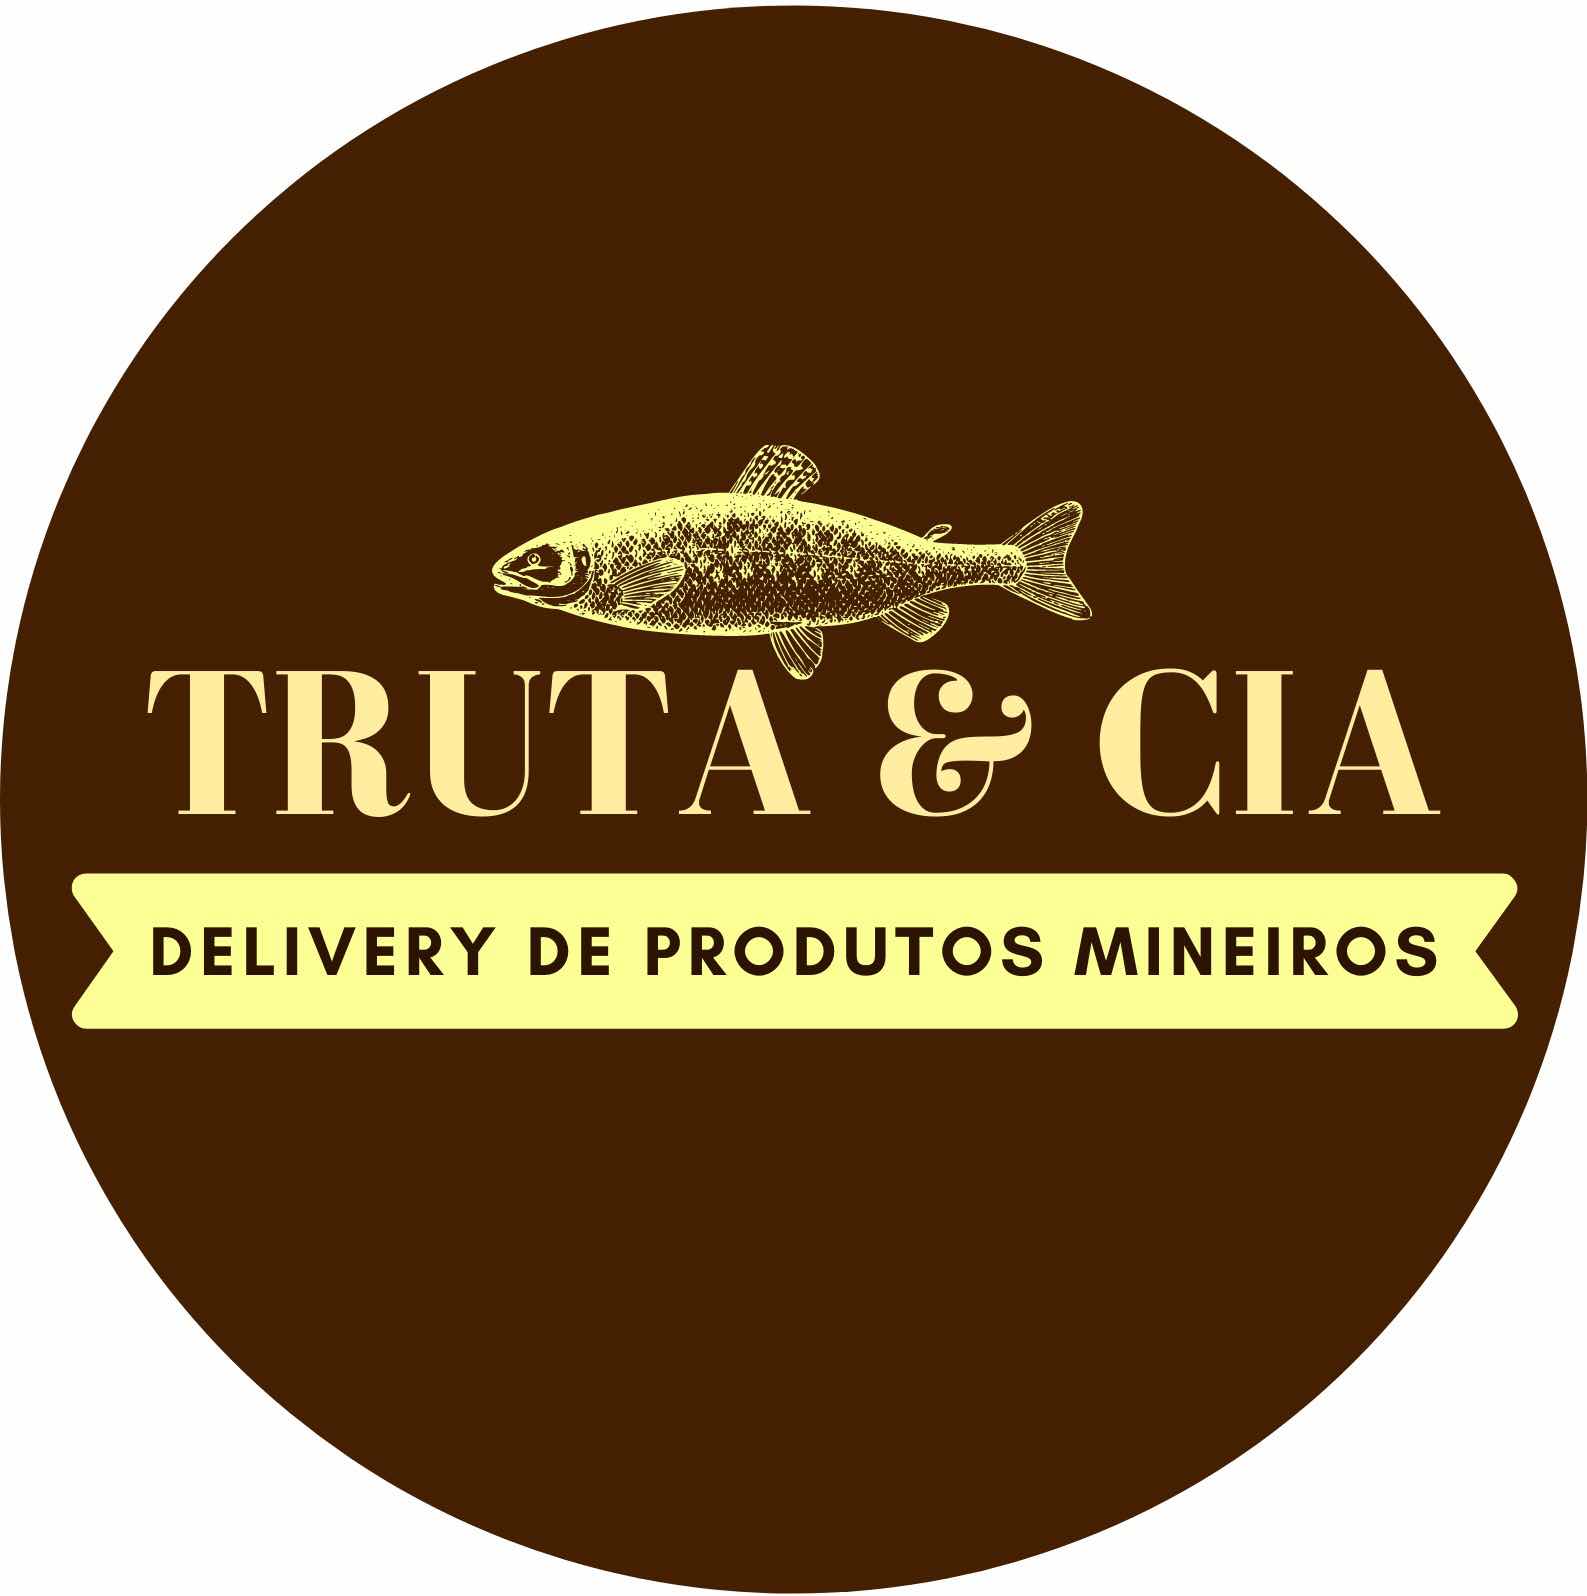 Truta & Cia - Delivery de produtos mineiros